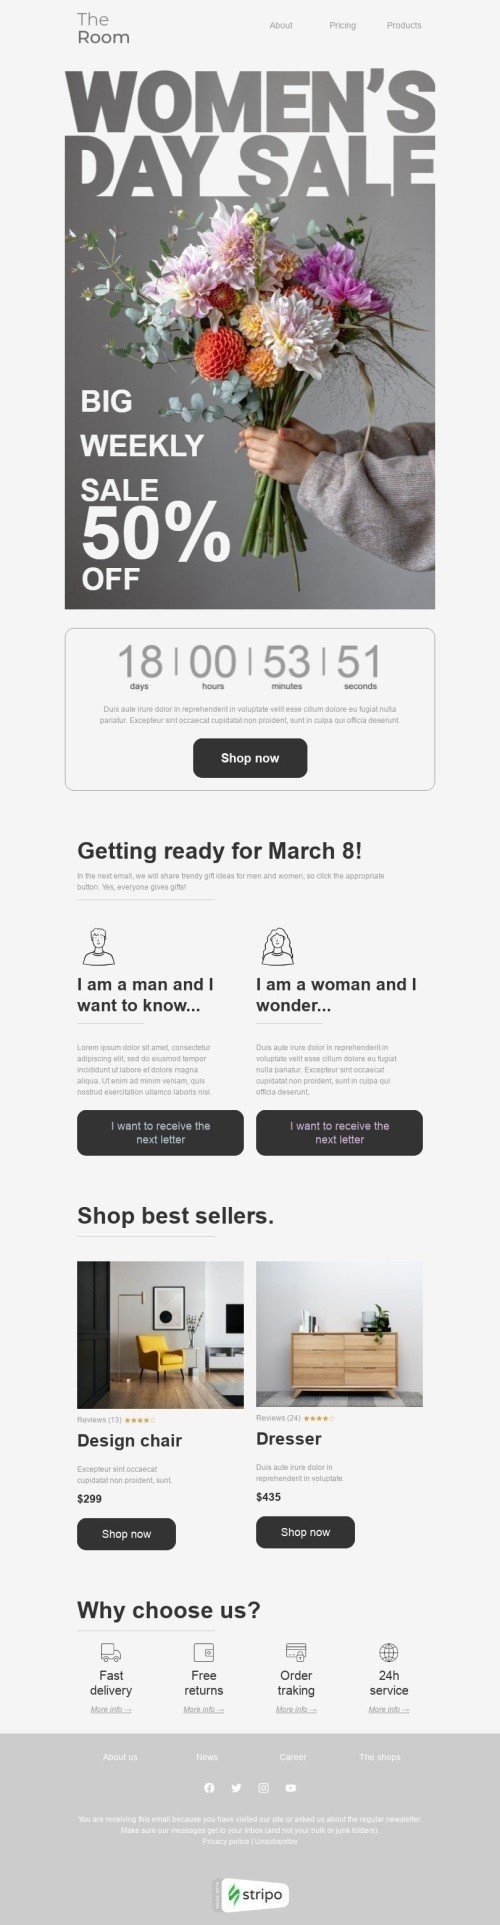 Modelo de E-mail de «Grande venda semanal» de Dia da Mulher para a indústria de Móveis, Decoração e DIY Visualização de desktop